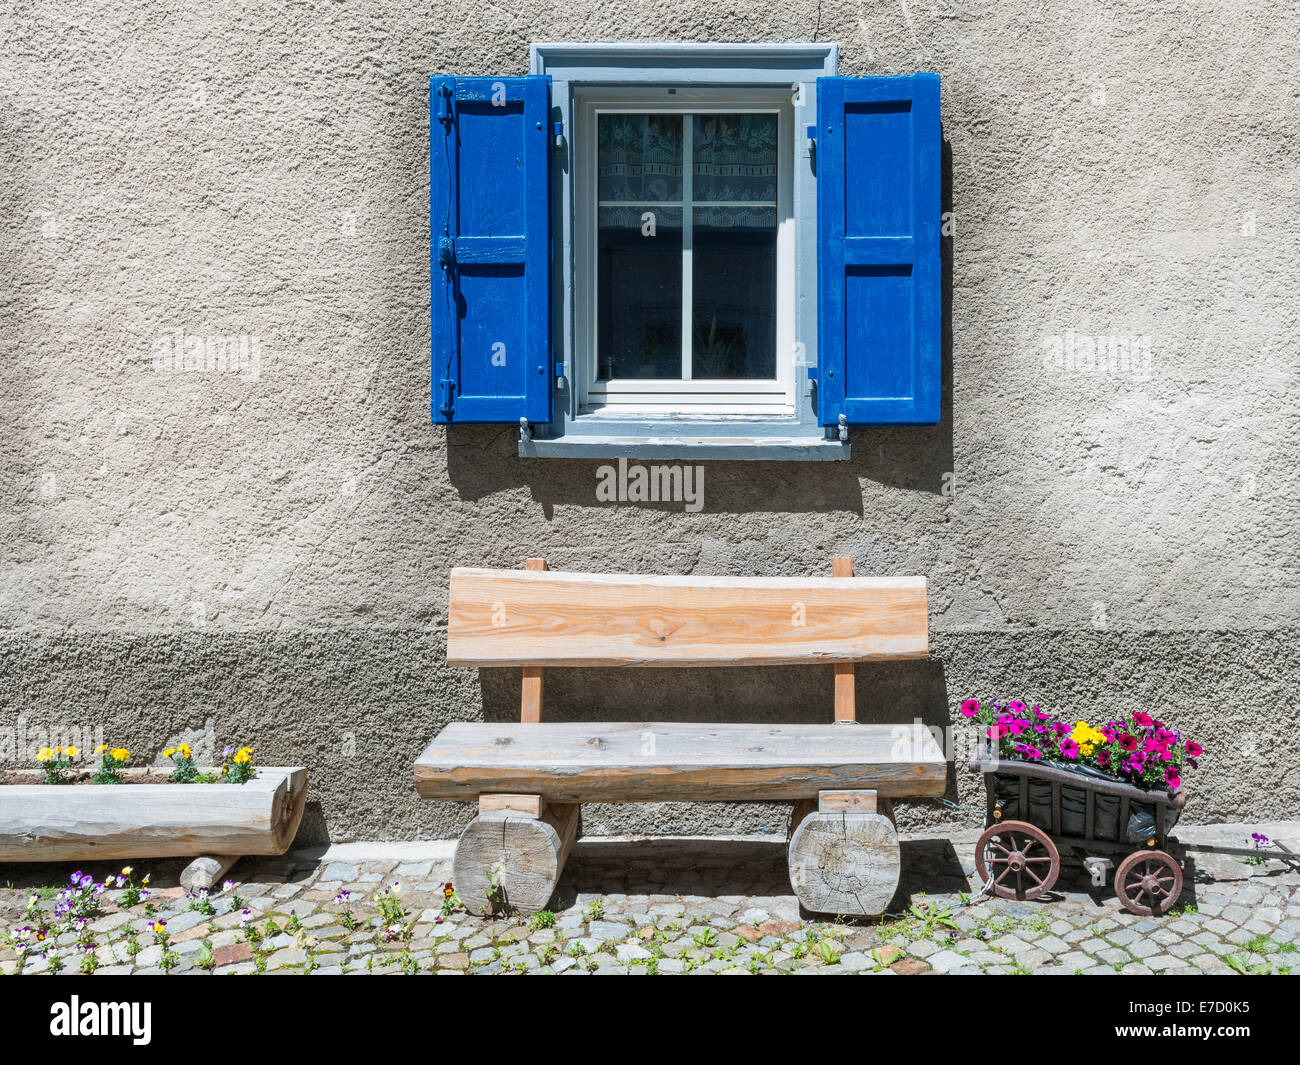 Fenster mit Fensterläden, Holzbank. Kleinlaster, stilisiert als Blumentopf. Gemütliche, einfache alte Zeiten leben. Stockfoto